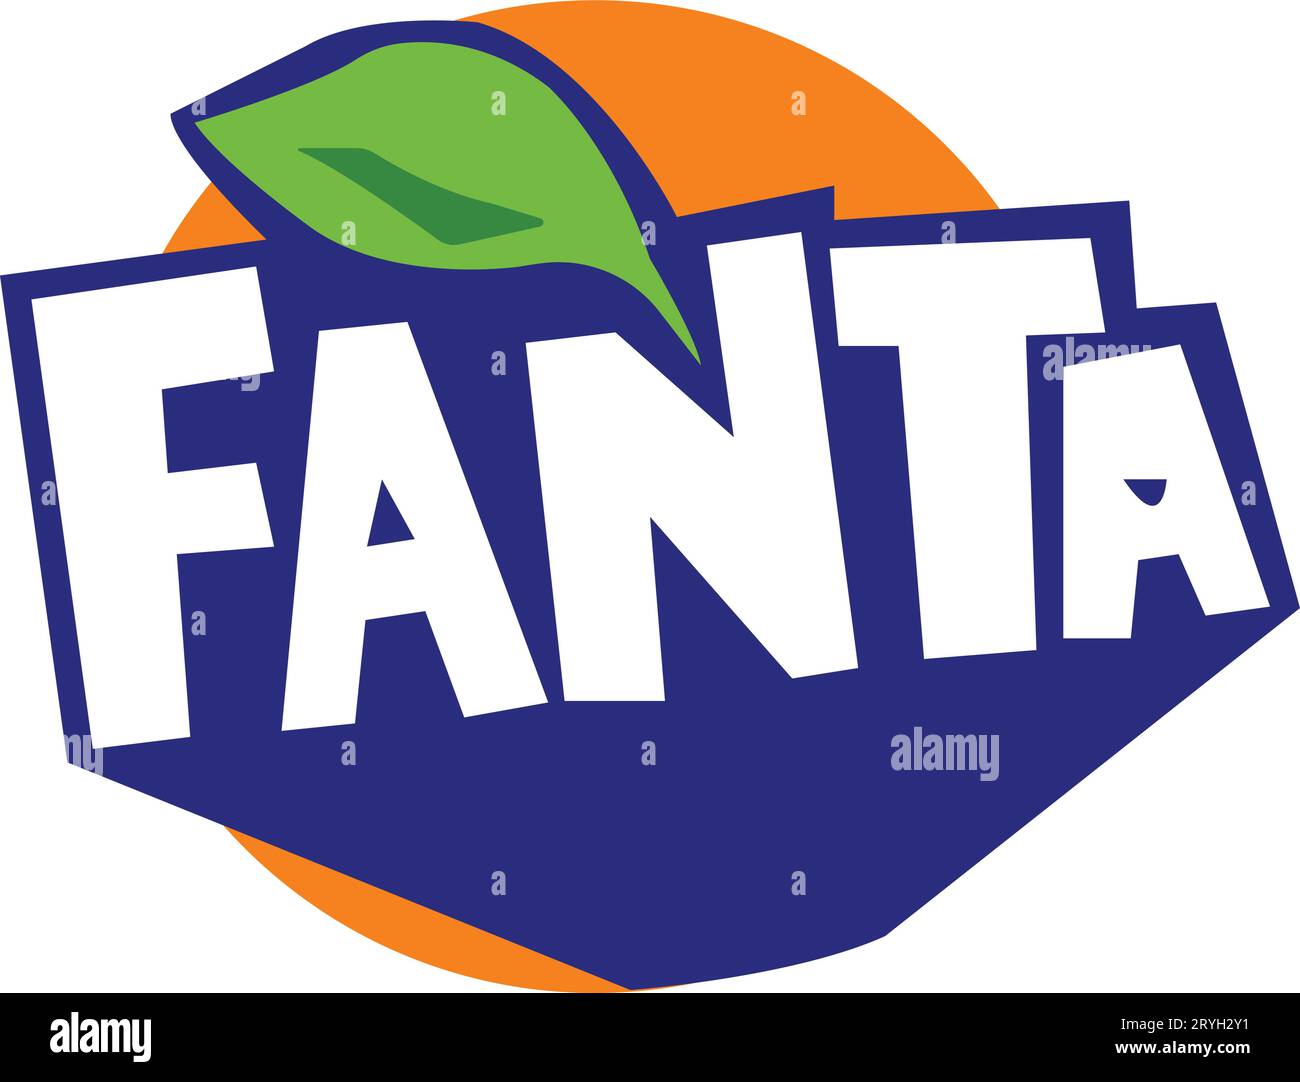 Marche di bevande. Logo dell'azienda Fanta Energy drink. Illustrazione Vettoriale